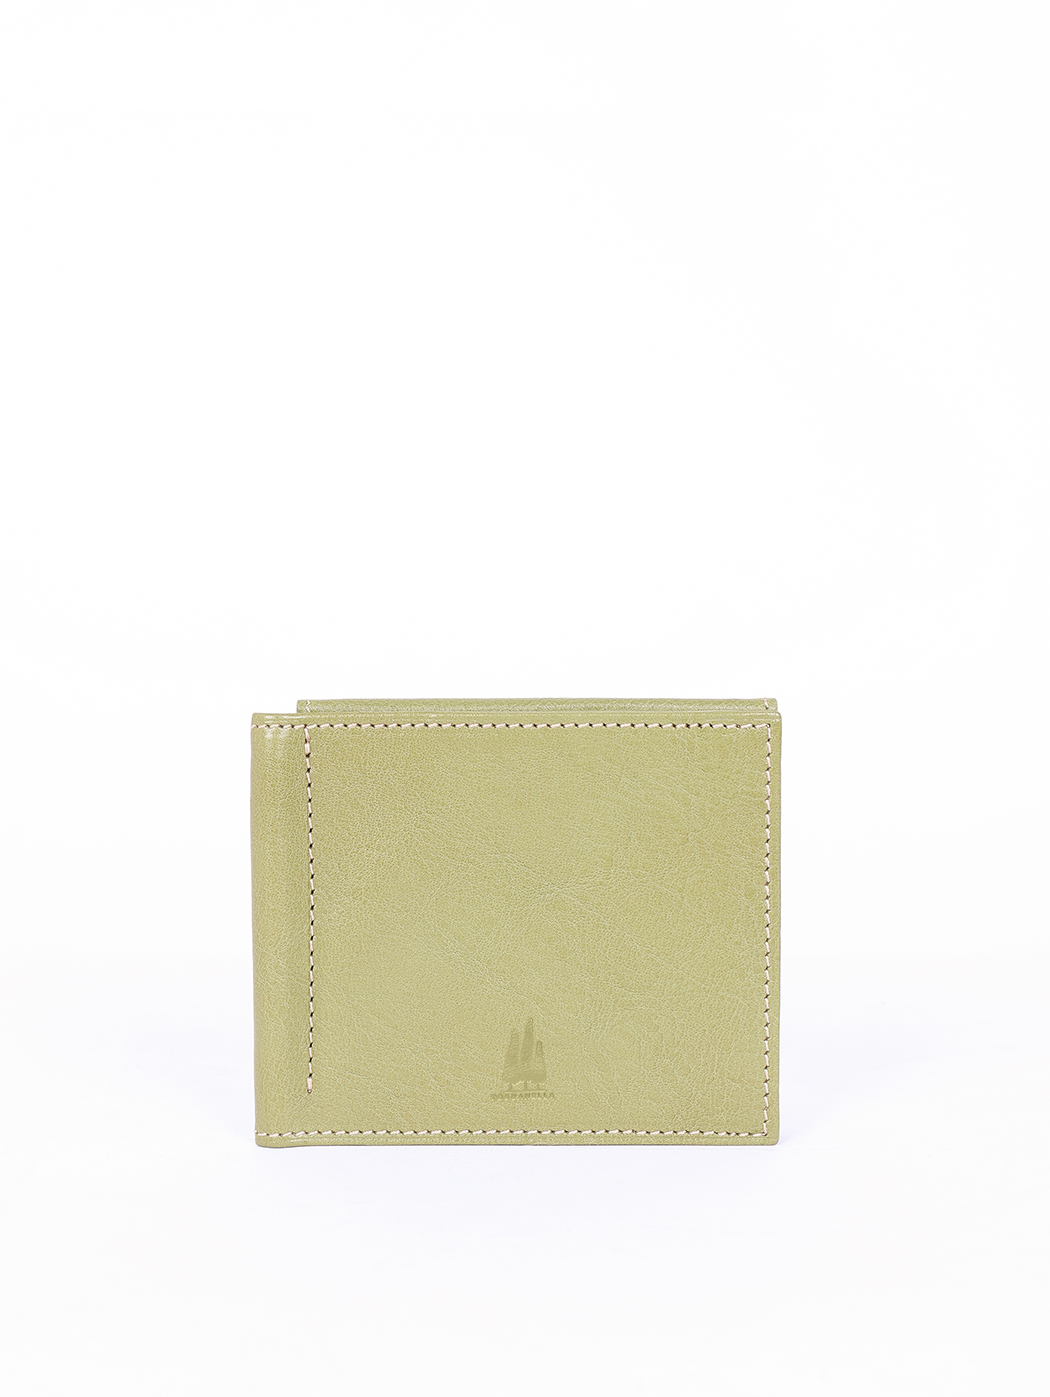 Компактный бумажник для карточек оливковый зеленый